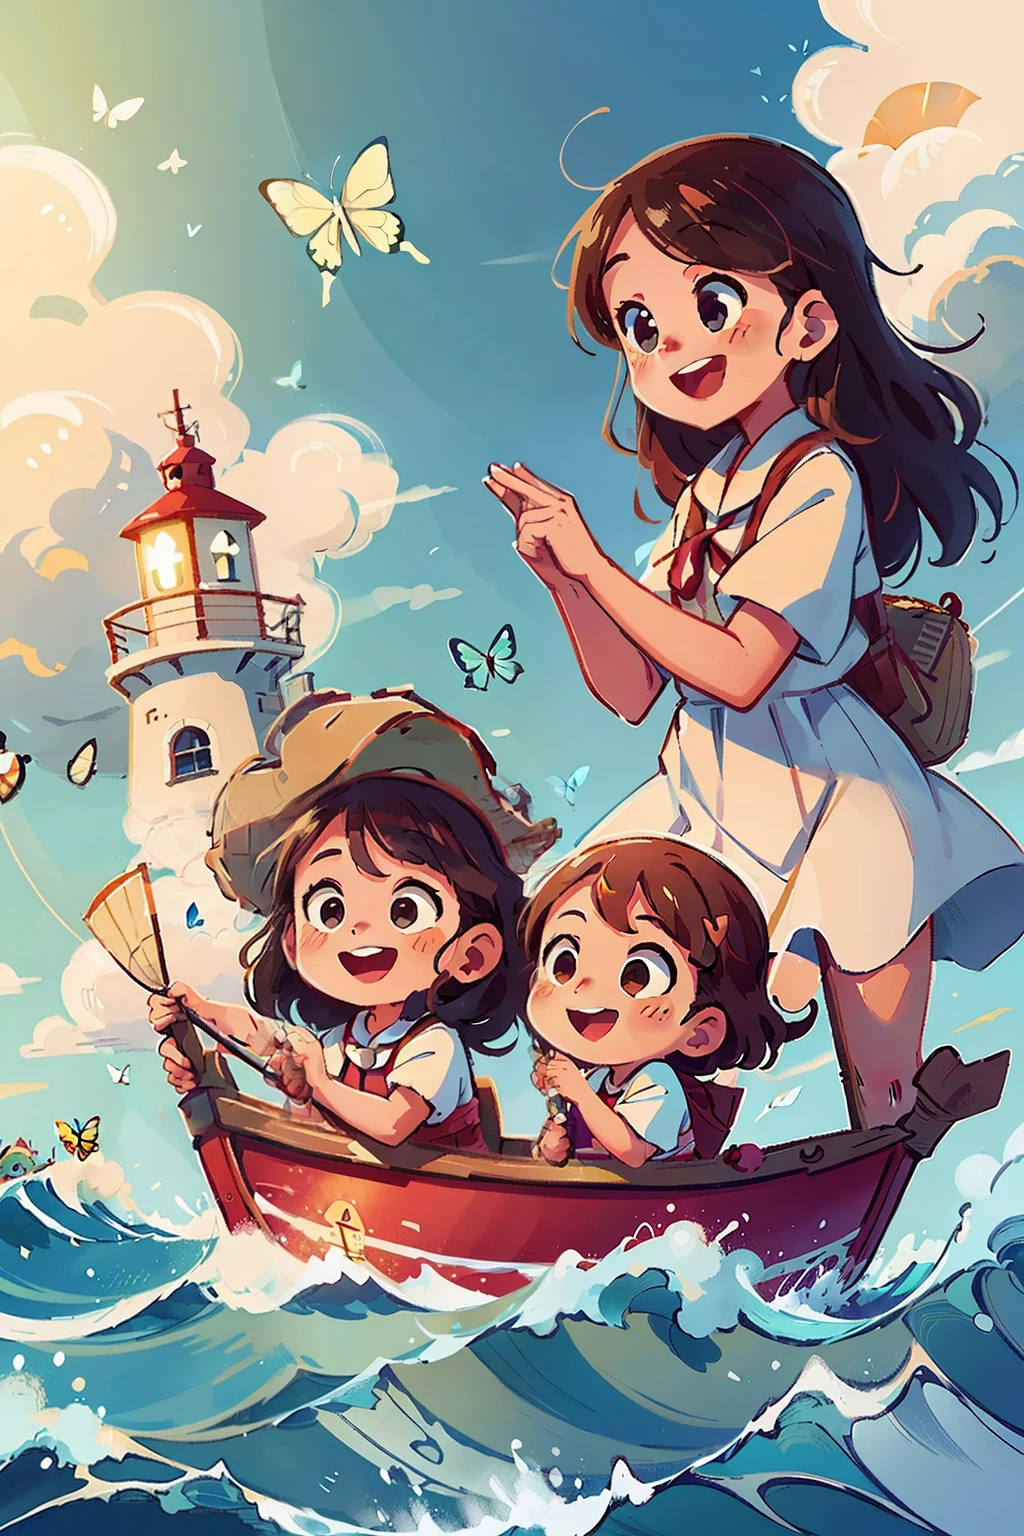 Genera una imagen de dos niñas muy jóvenes felices navegando en un barco., ondas, Mar, cielo con nubes blancas. mariposas coloridas, Faro al fondo,